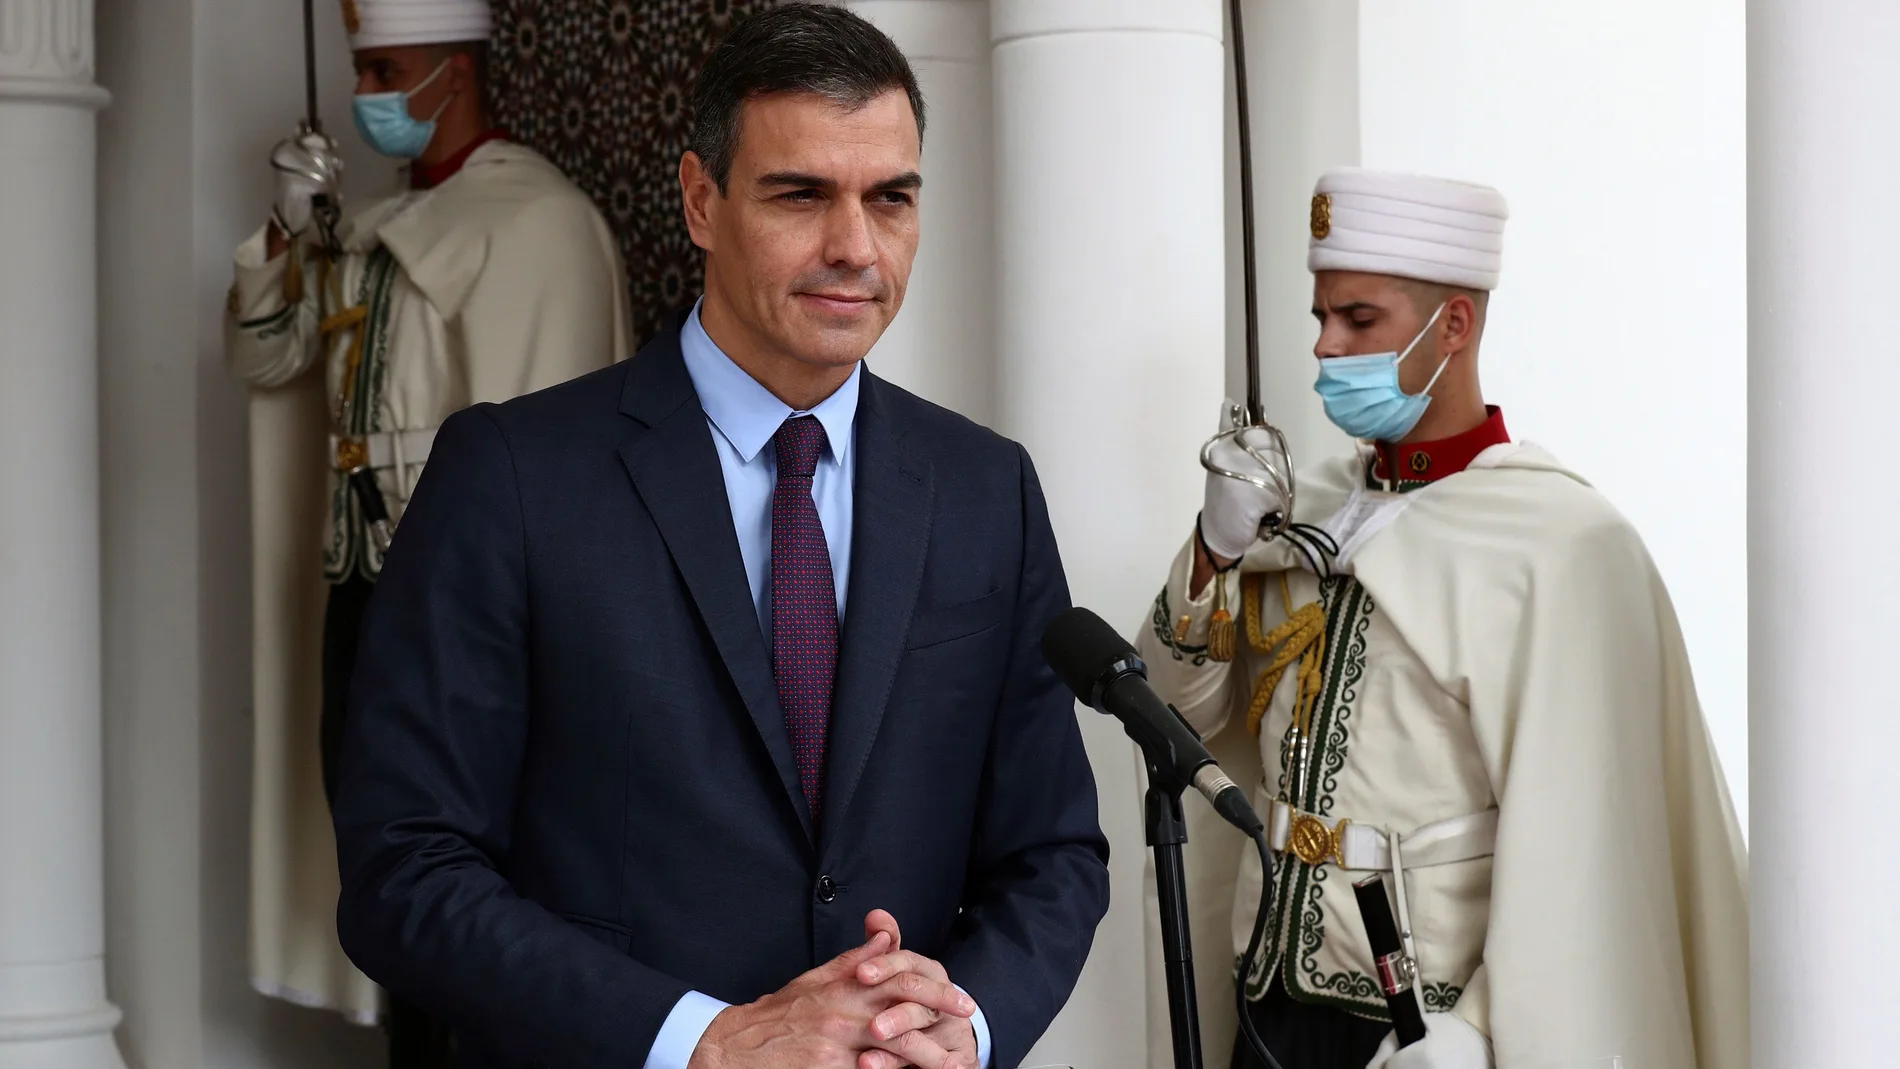 El presidente del Gobierno, Pedro Sánchez en su visita oficial en Argelia en octubre de 2020.